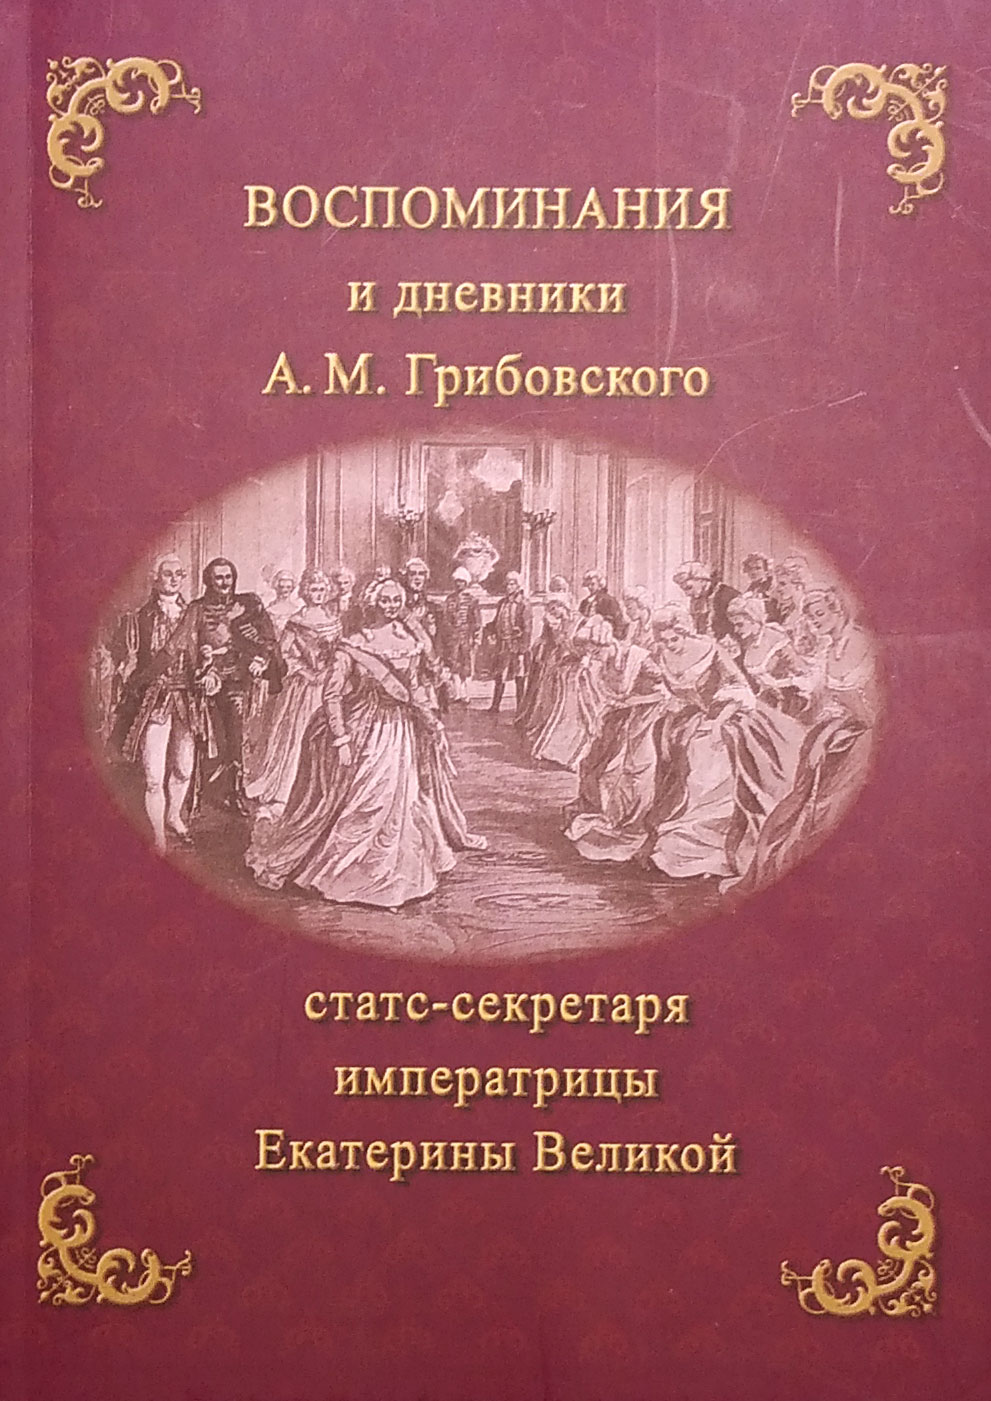 Воспоминания и дневники А. М. Грибовского, статс-секретаря императрицы Екатерины Великой